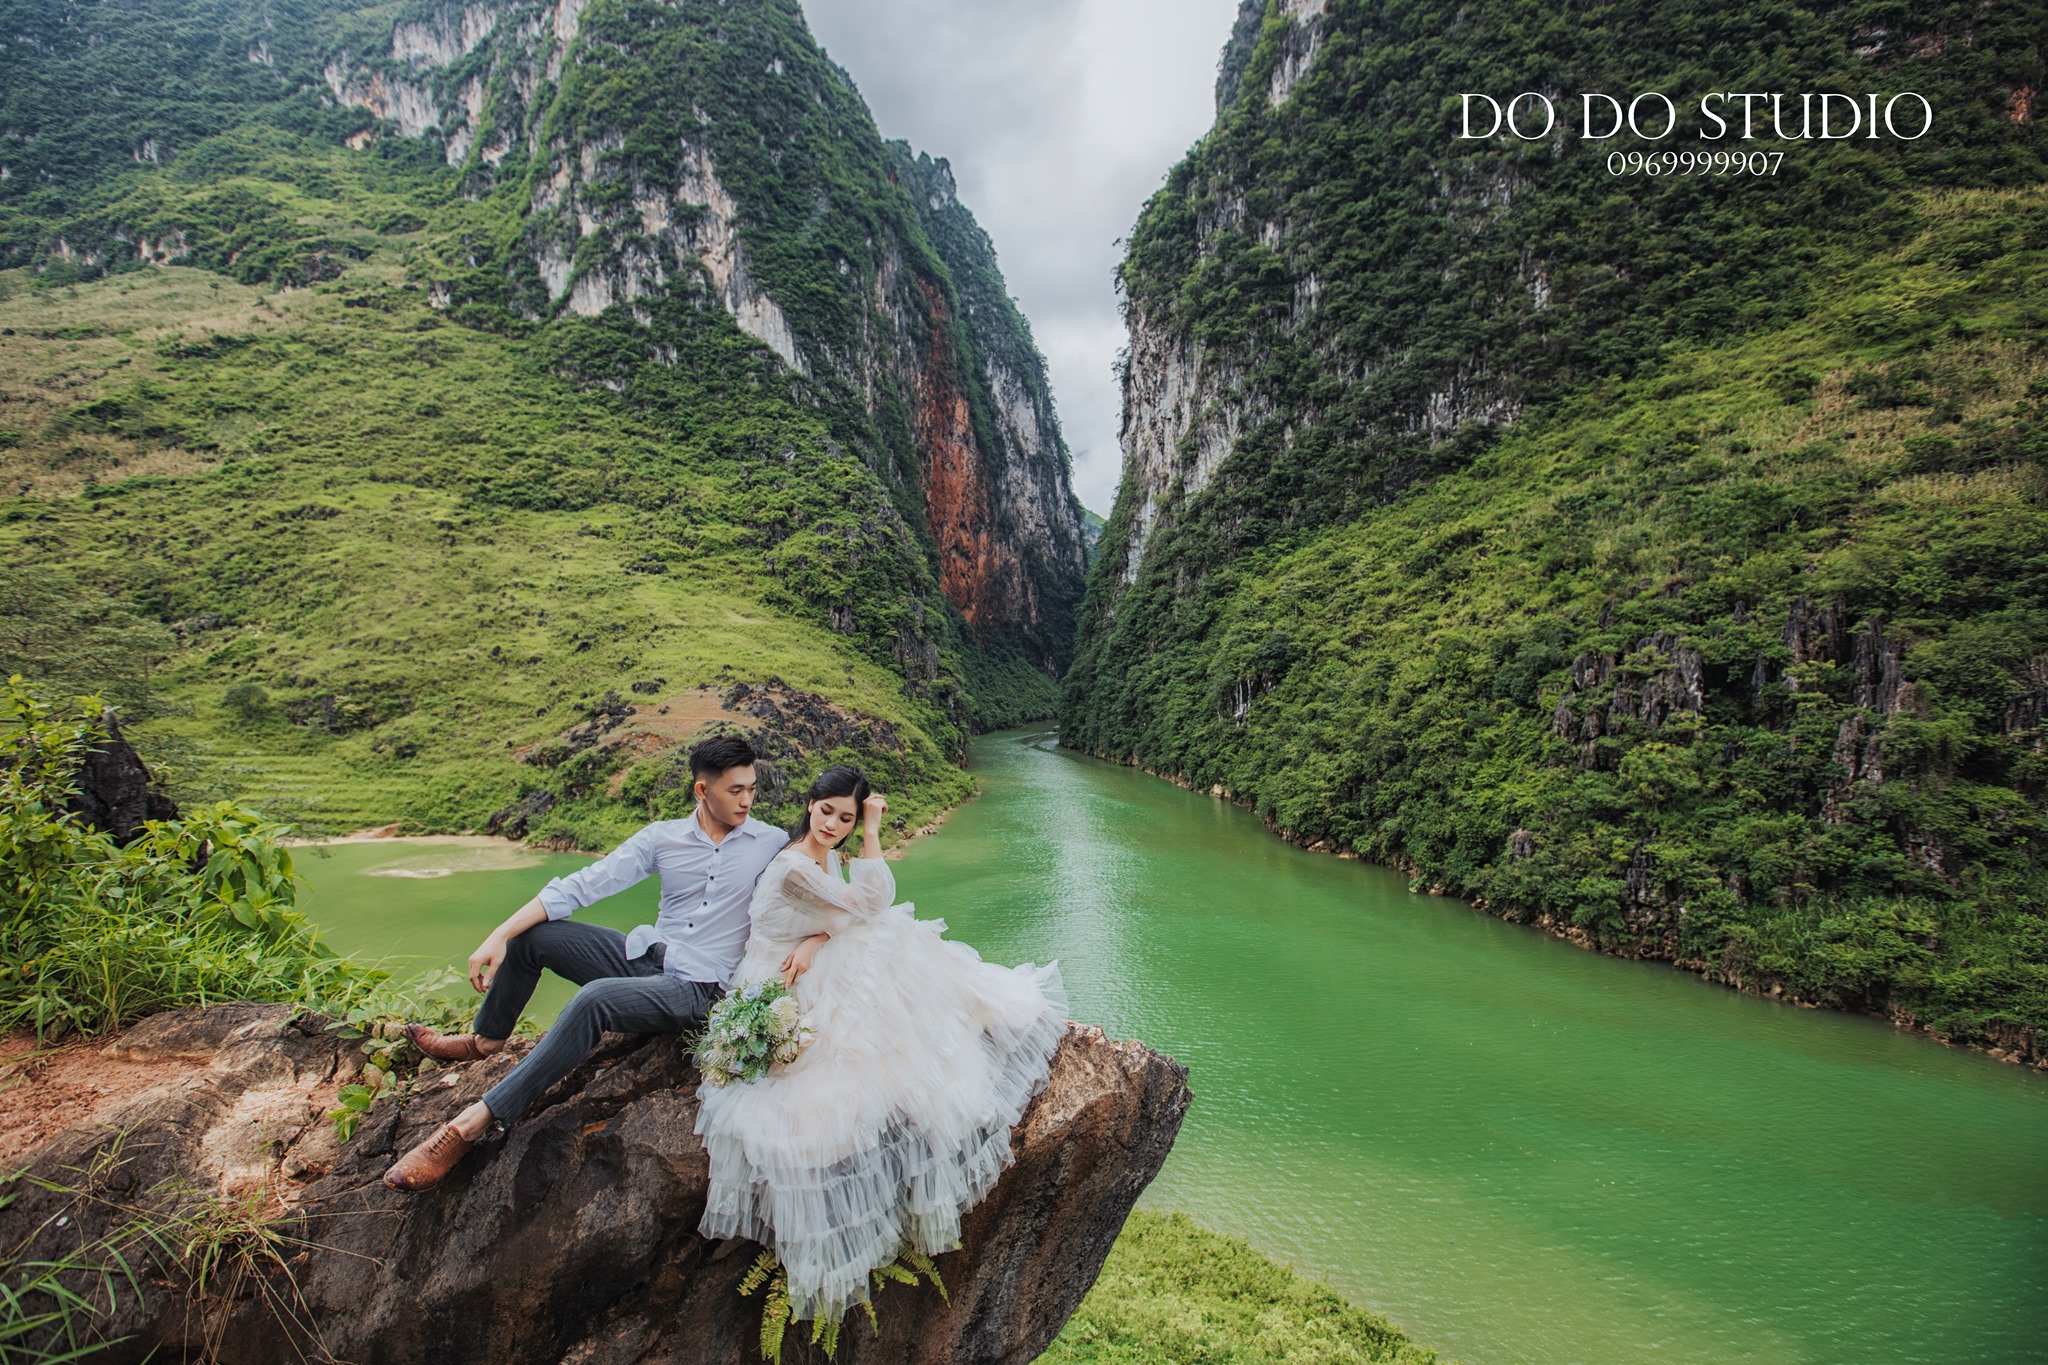 Studio chụp ảnh cưới tại Hà Giang cung cấp dịch vụ chuyên nghiệp và hiện đại nhất để bạn có thể giữ lại những khoảnh khắc vô giá trong ngày trọng đại của mình. Hãy đến với chúng tôi để được trải nghiệm những bức ảnh cưới đẹp nhất.